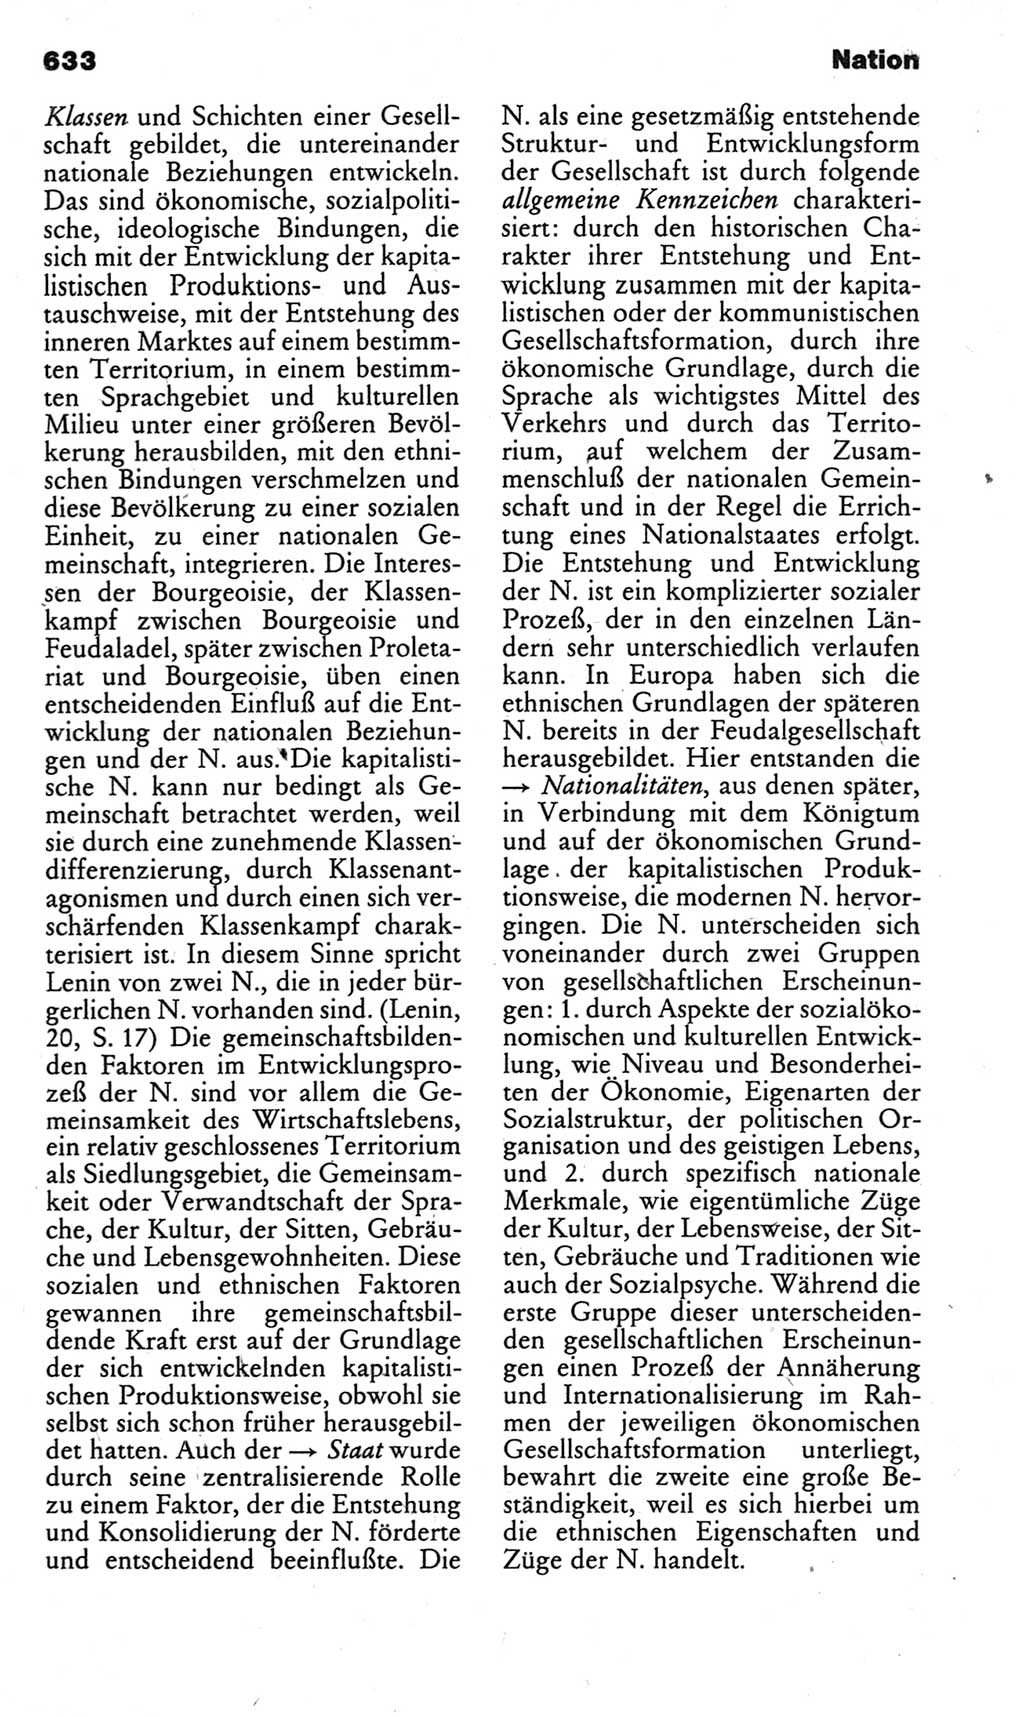 Kleines politisches Wörterbuch [Deutsche Demokratische Republik (DDR)] 1983, Seite 633 (Kl. pol. Wb. DDR 1983, S. 633)